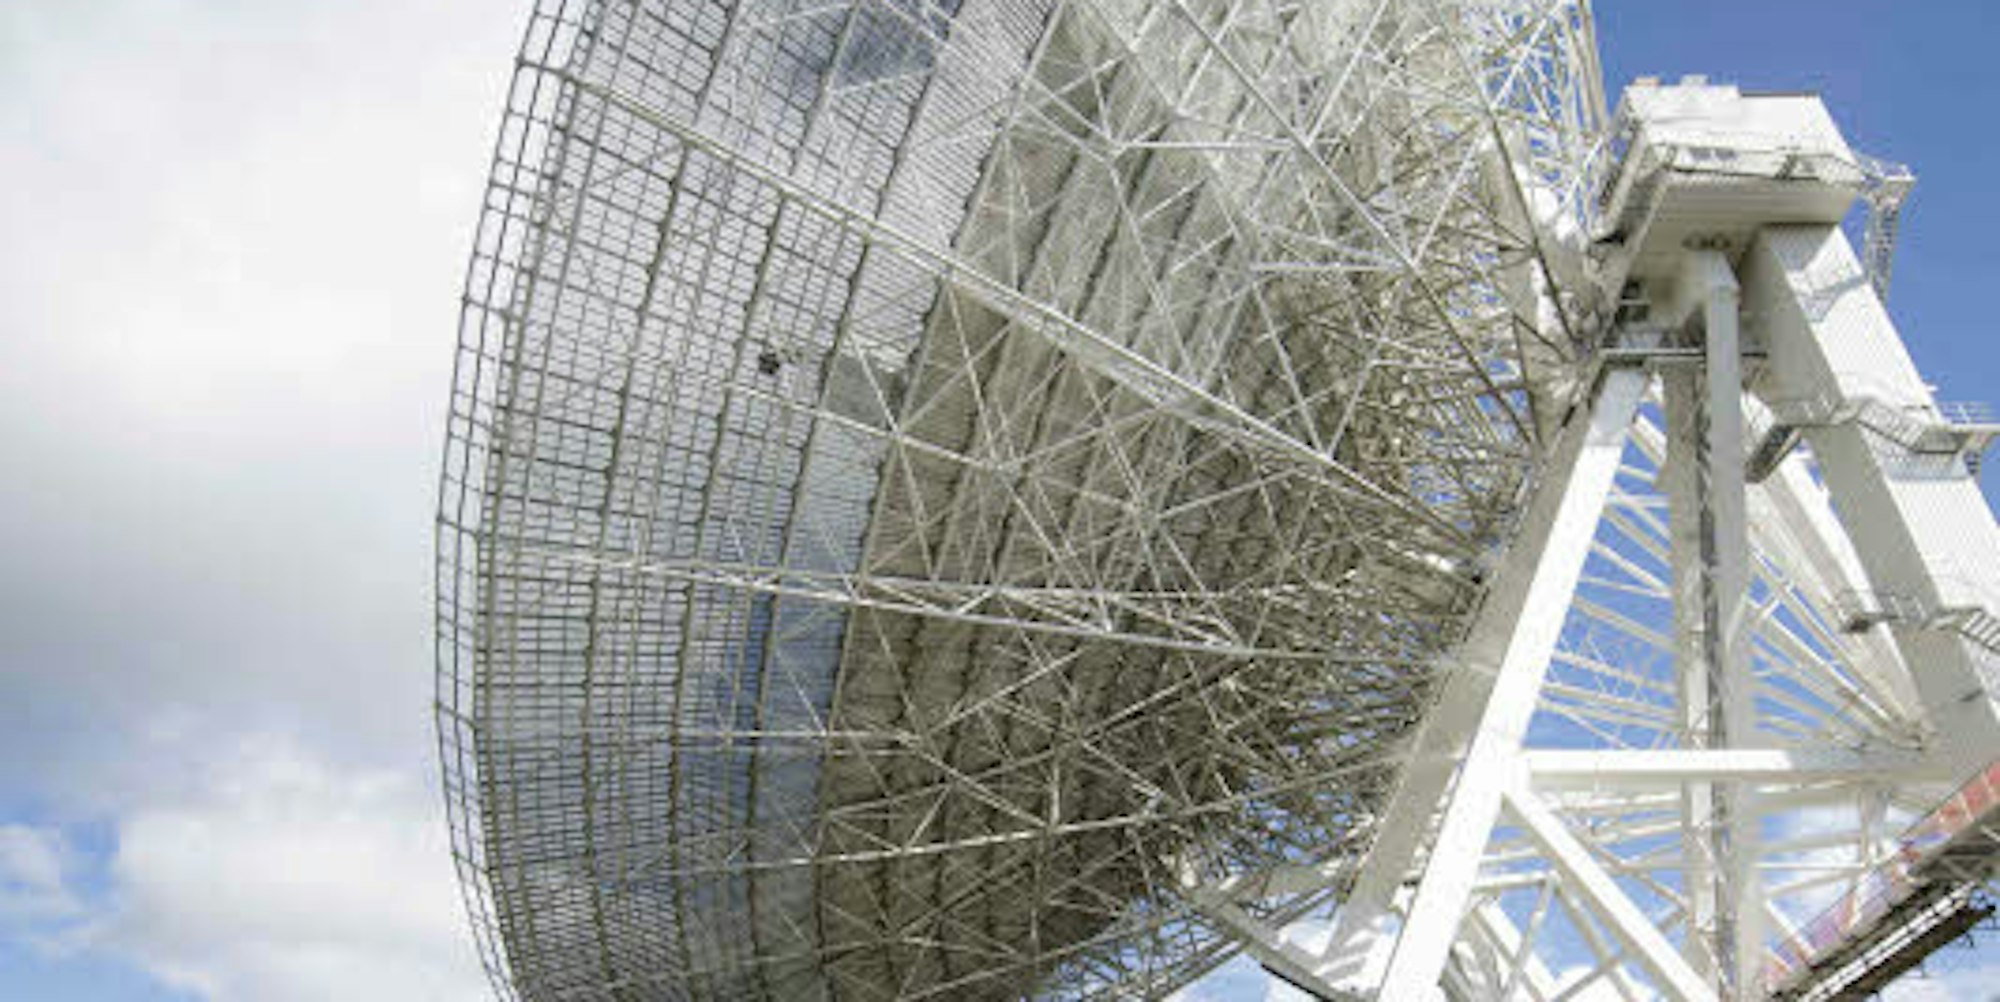 Es wiegt 3200 Tonnen und ein Anstrich würde 15 Jahre dauern: Die Faszination der Bürger in Sachen Radioteleskop Effelsberg ist ungebrochen.